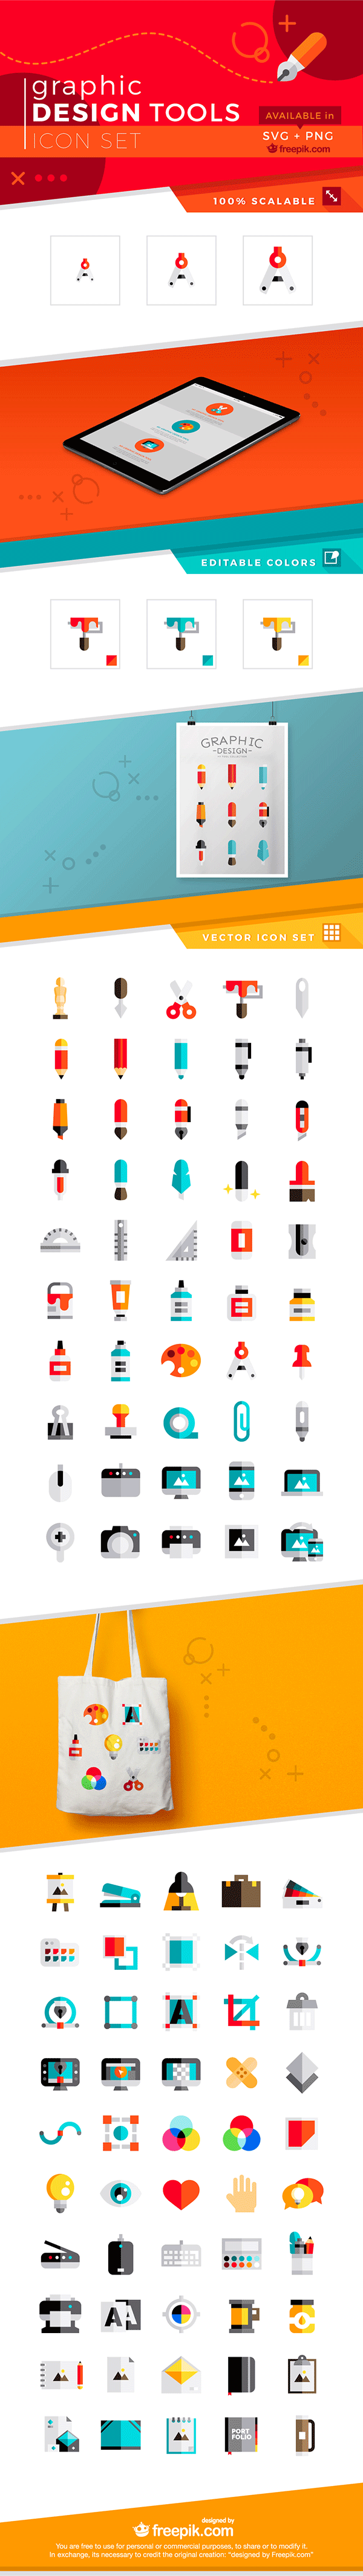 100个图形设计工具图标合集 Graphic Design Tools Icons [svg, png]插图